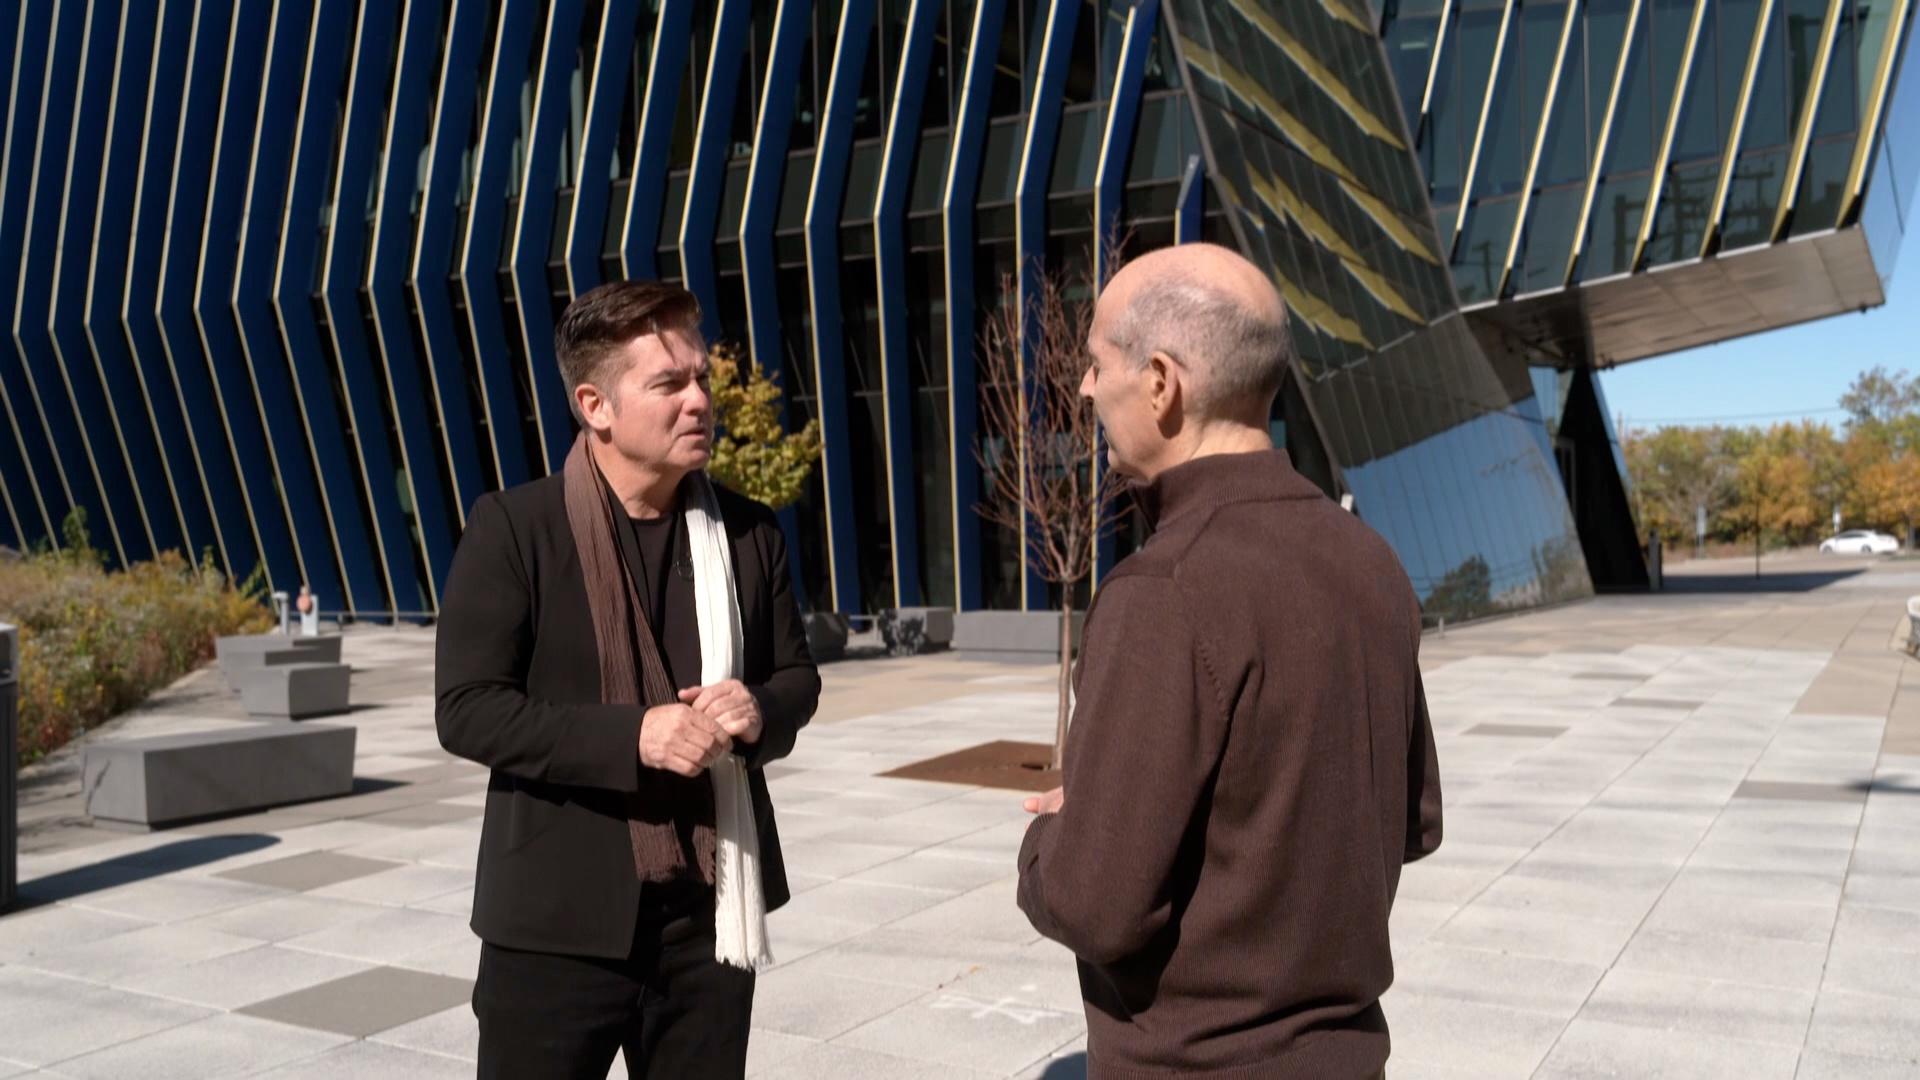 Geoffrey Baer talks with architect Juan Gabriel Moreno at El Centro